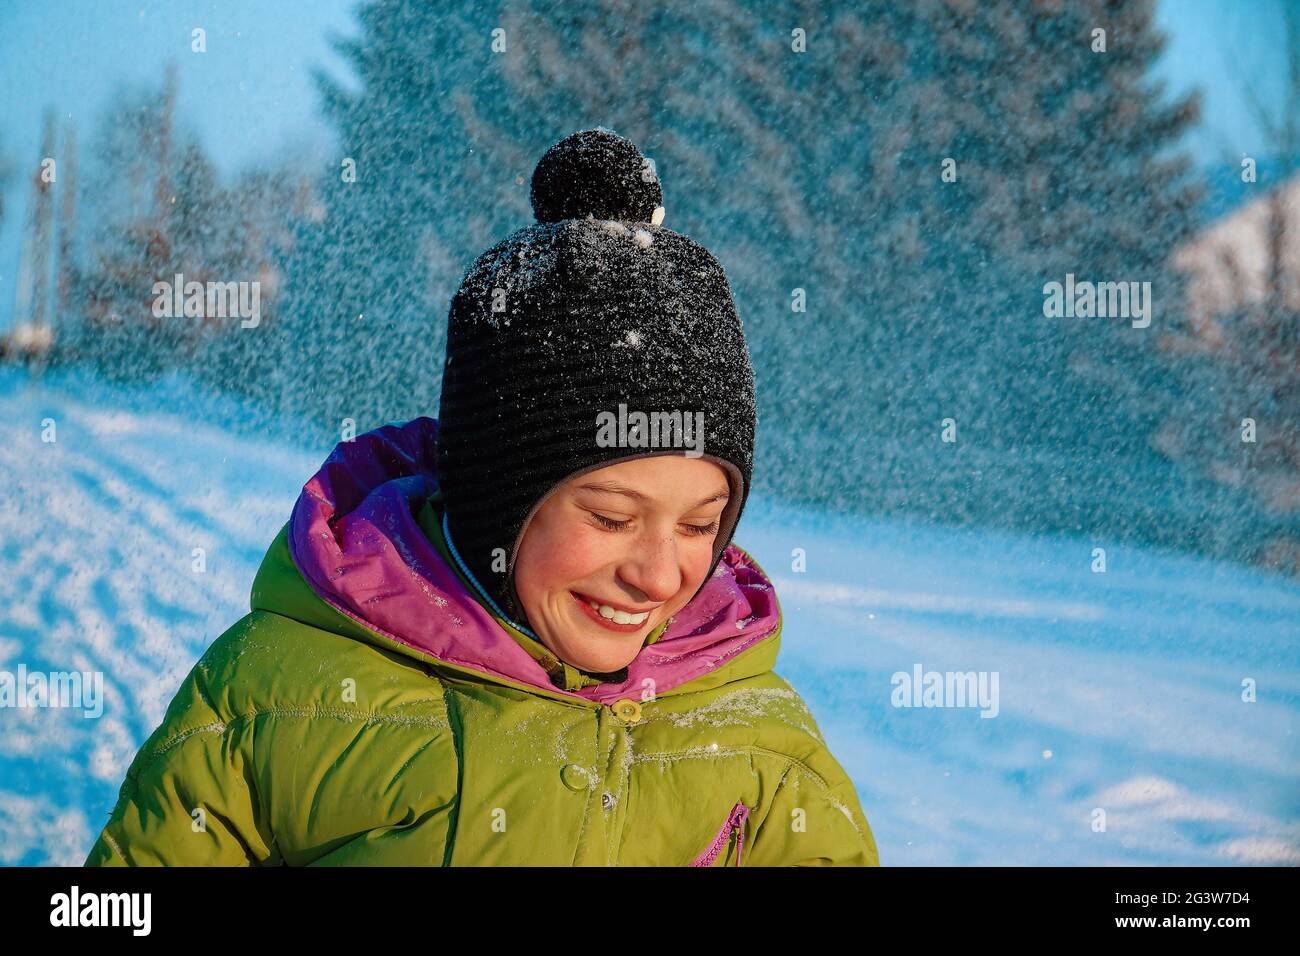 Un bambino felice senza una maschera ride e si rallegra in una passeggiata in inverno. Ritratto di un ragazzo in un giorno invernale soleggiato. Foto Stock